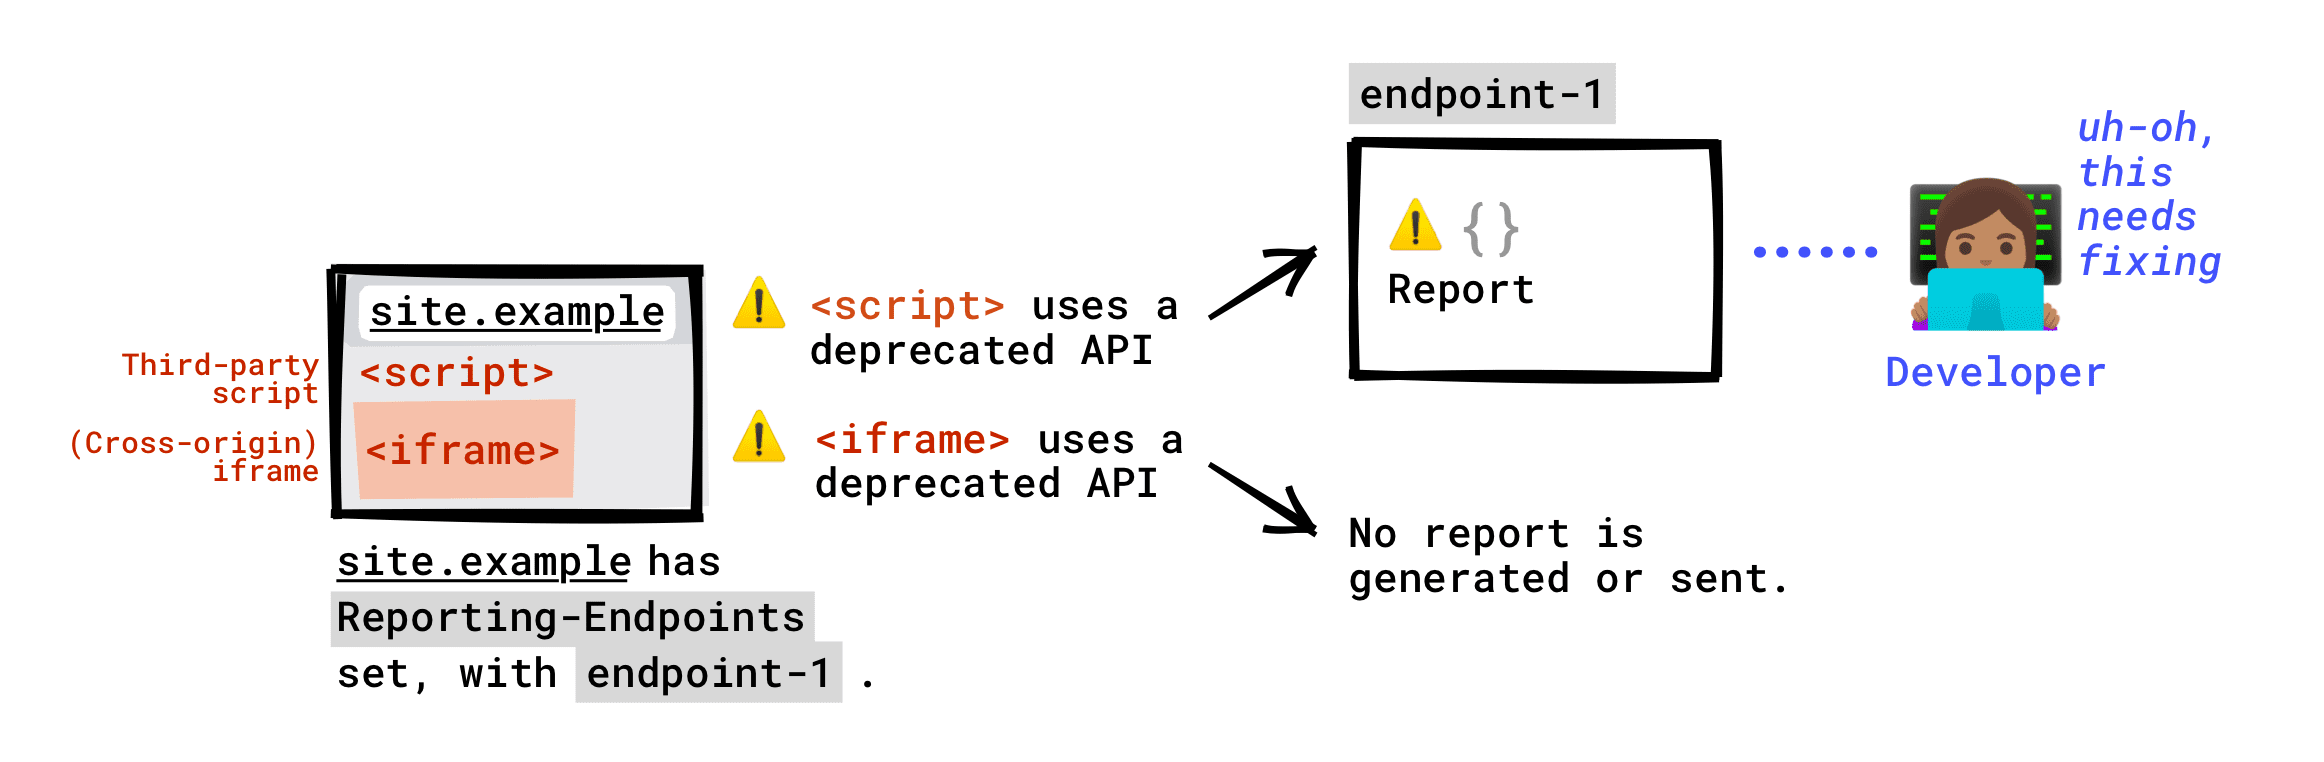 ページに Reporting-Endpoints ヘッダーが設定されている場合: ページで実行されているサードパーティ スクリプトによって呼び出される非推奨の API がエンドポイントに報告されます。ページに埋め込まれた iframe によって呼び出される非推奨の API は、エンドポイントに報告されません。サポート終了レポートは、iframe サーバーで Reporting-Endpoints が設定されている場合にのみ生成され、このレポートは iframe のサーバーが設定したエンドポイントに送信されます。